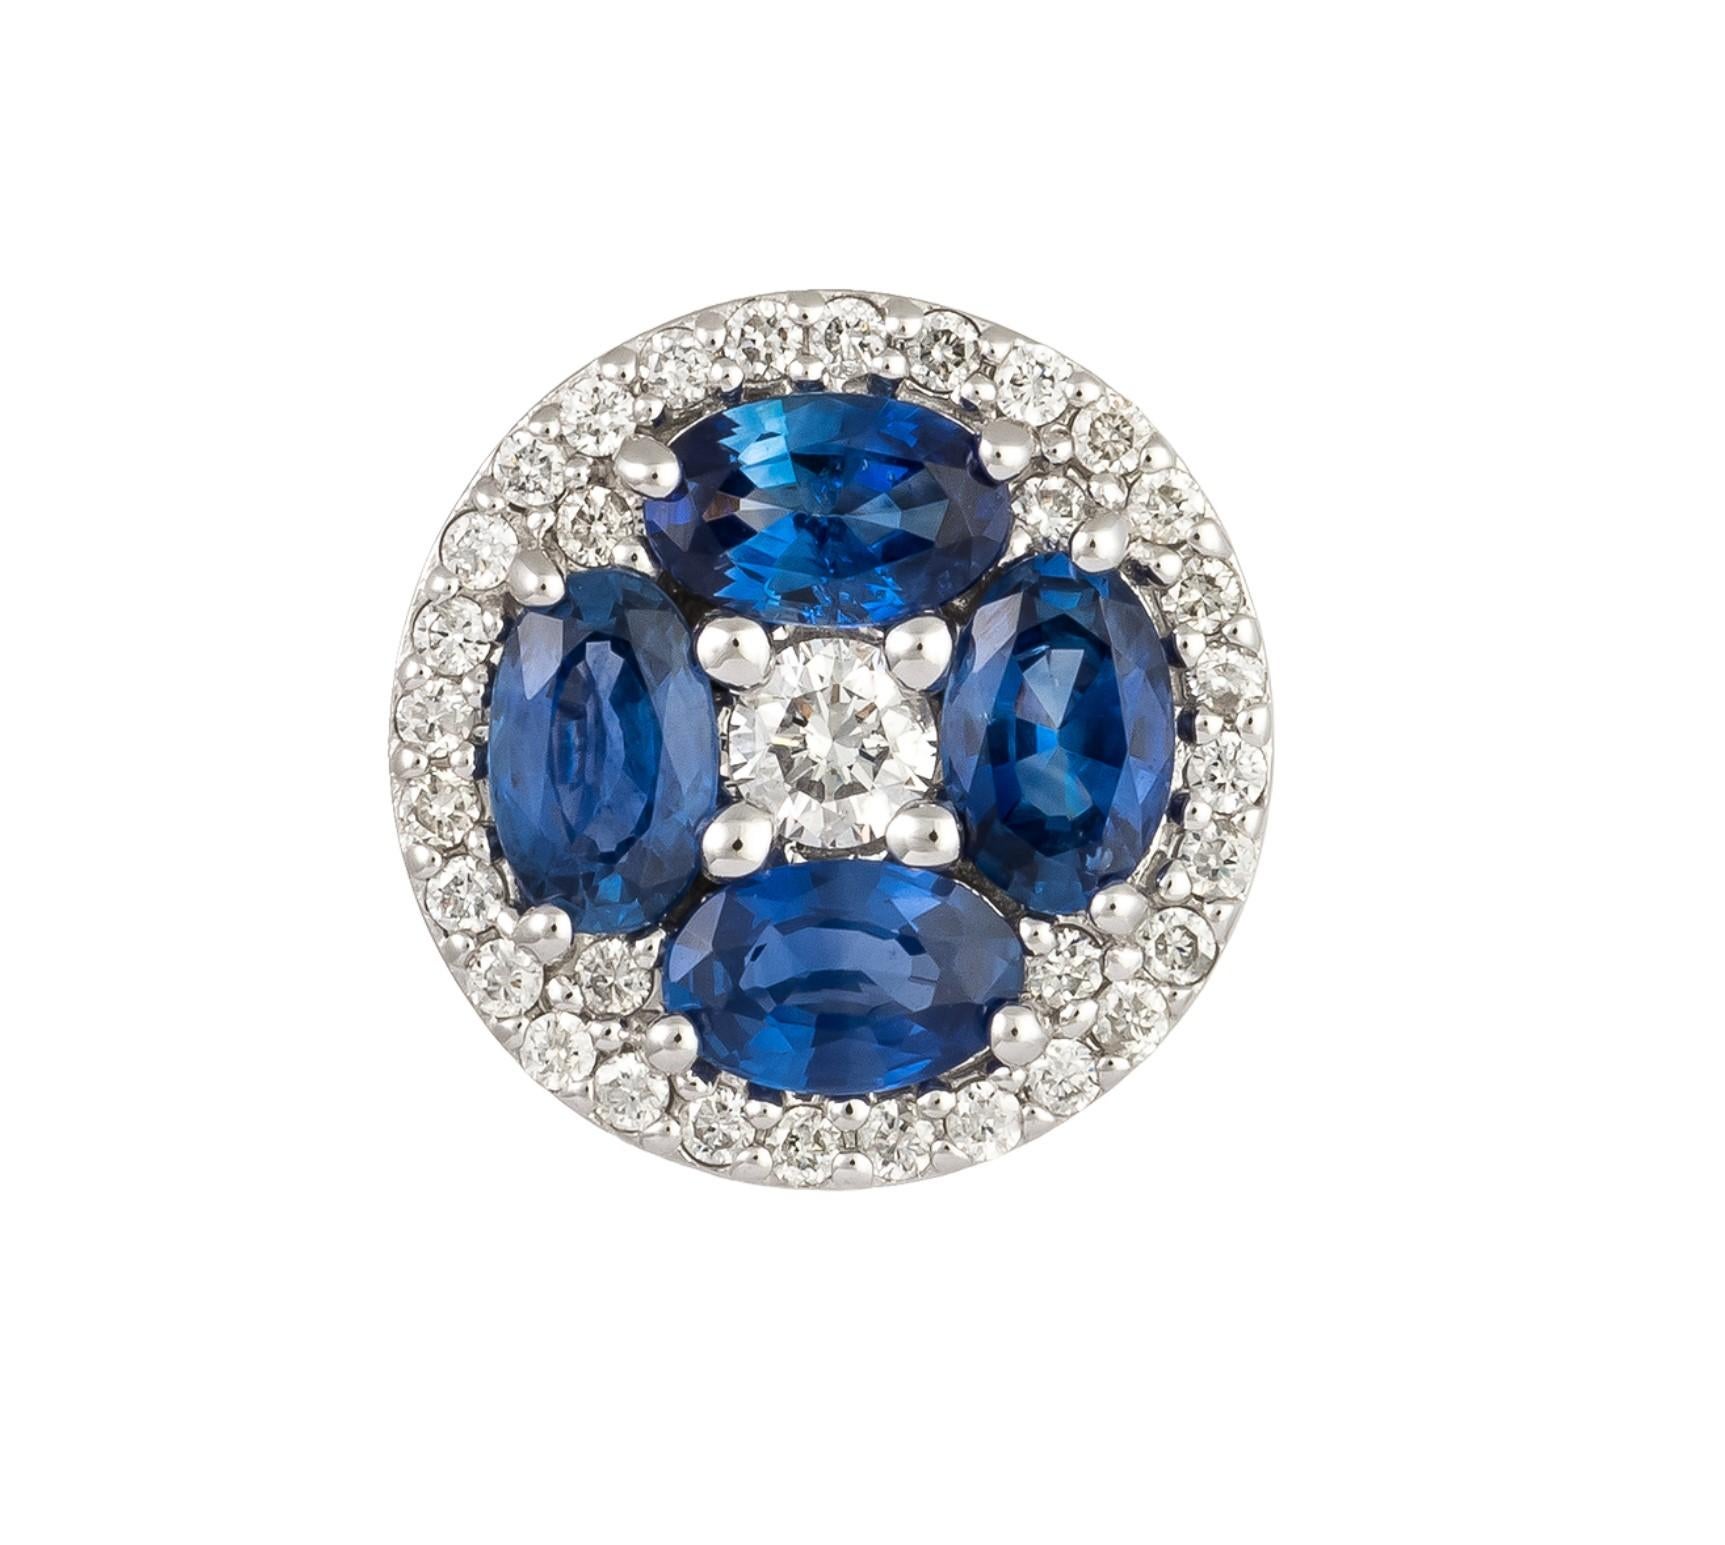 Das folgende Element, das wir anbieten, ist eine seltene wichtige Radiant 18KT Gold Large Rare Gorgeous Fancy Blue Sapphire and Diamond Floral Stud Earrings. Die Ohrringe bestehen aus wunderschönen glitzernden Saphiren und herrlichen Diamanten!!!